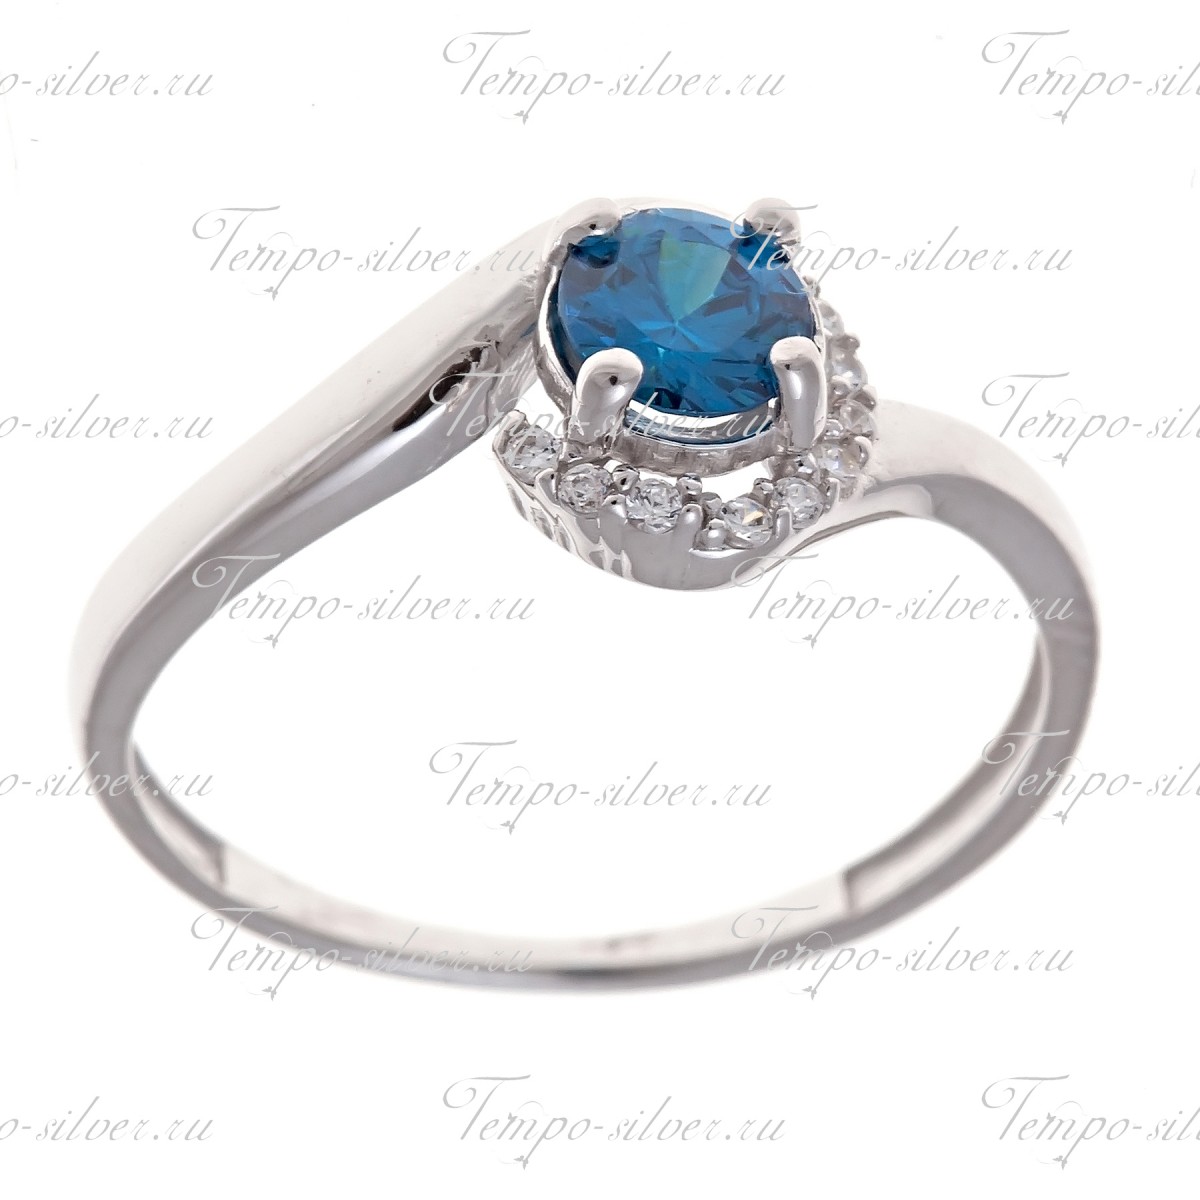 Кольцо из серебра с круглым голубым камнем на декоративной верхушке